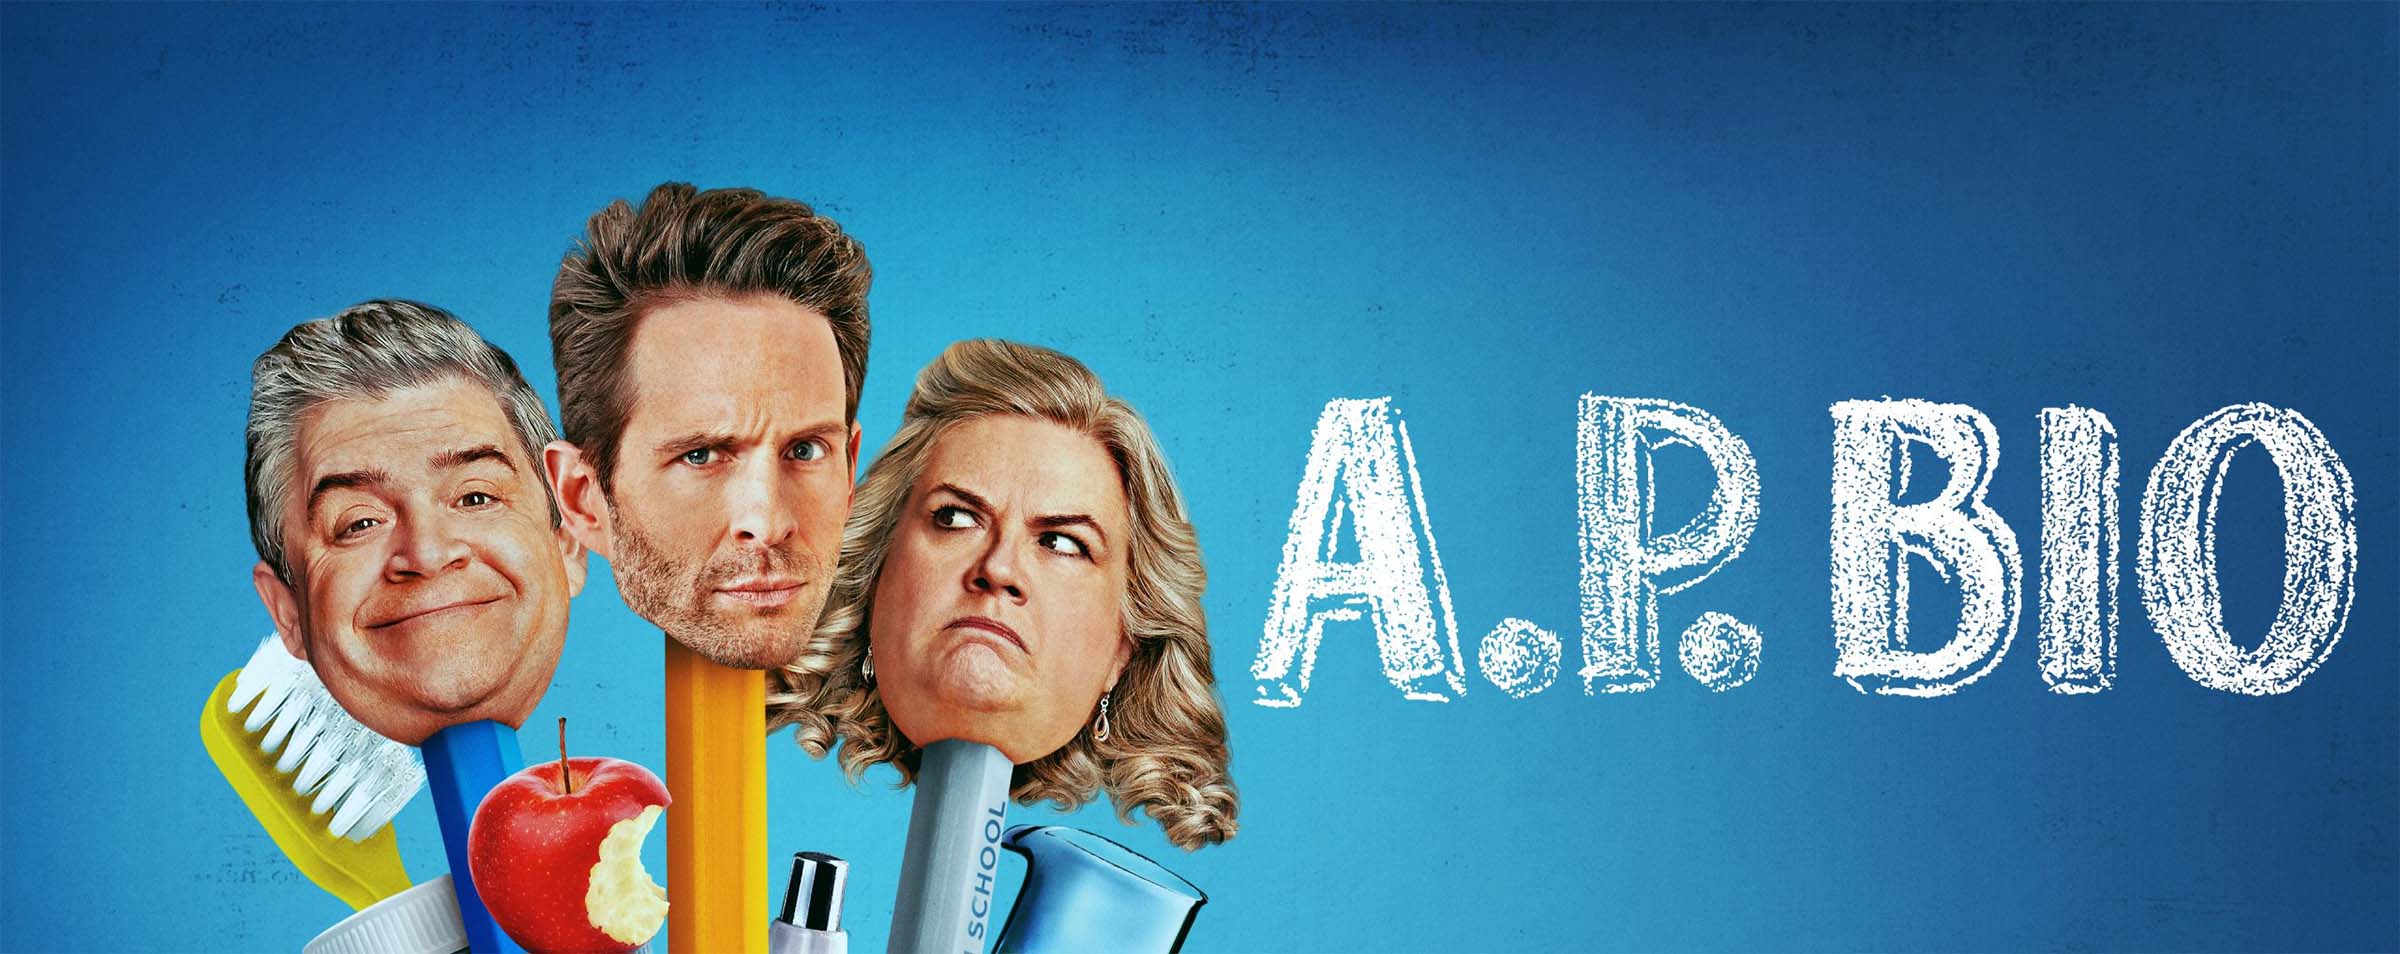 ‘A.P. Bio’ vuelve con su tercera temporada a Movistar+